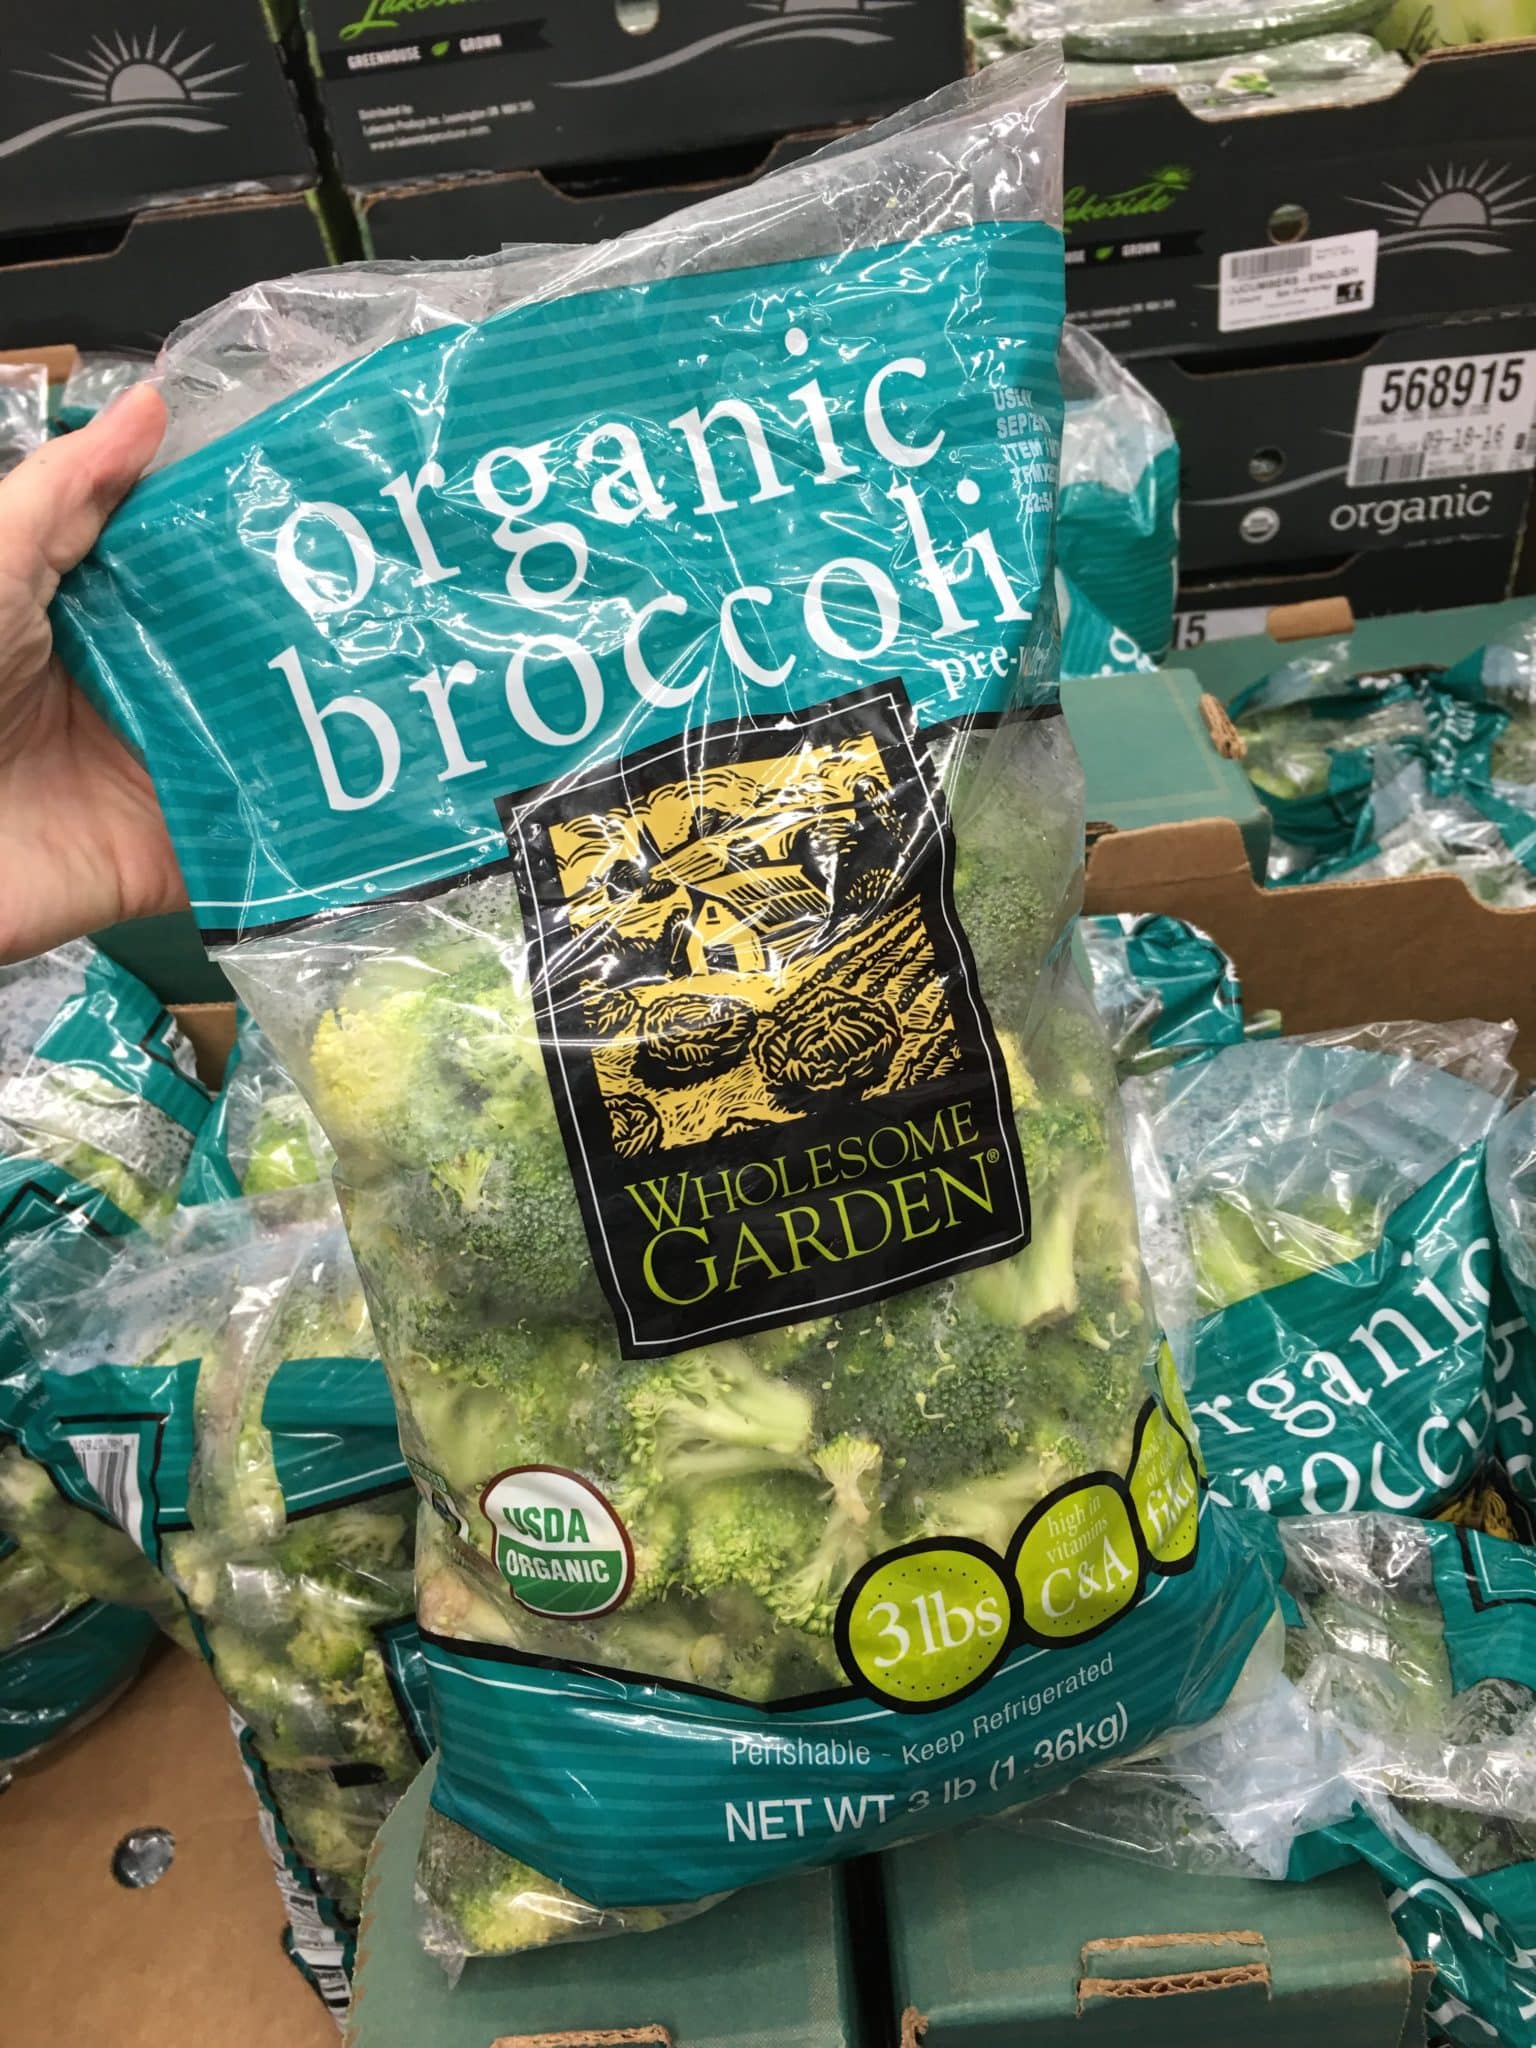 Organic broccoli from Costco